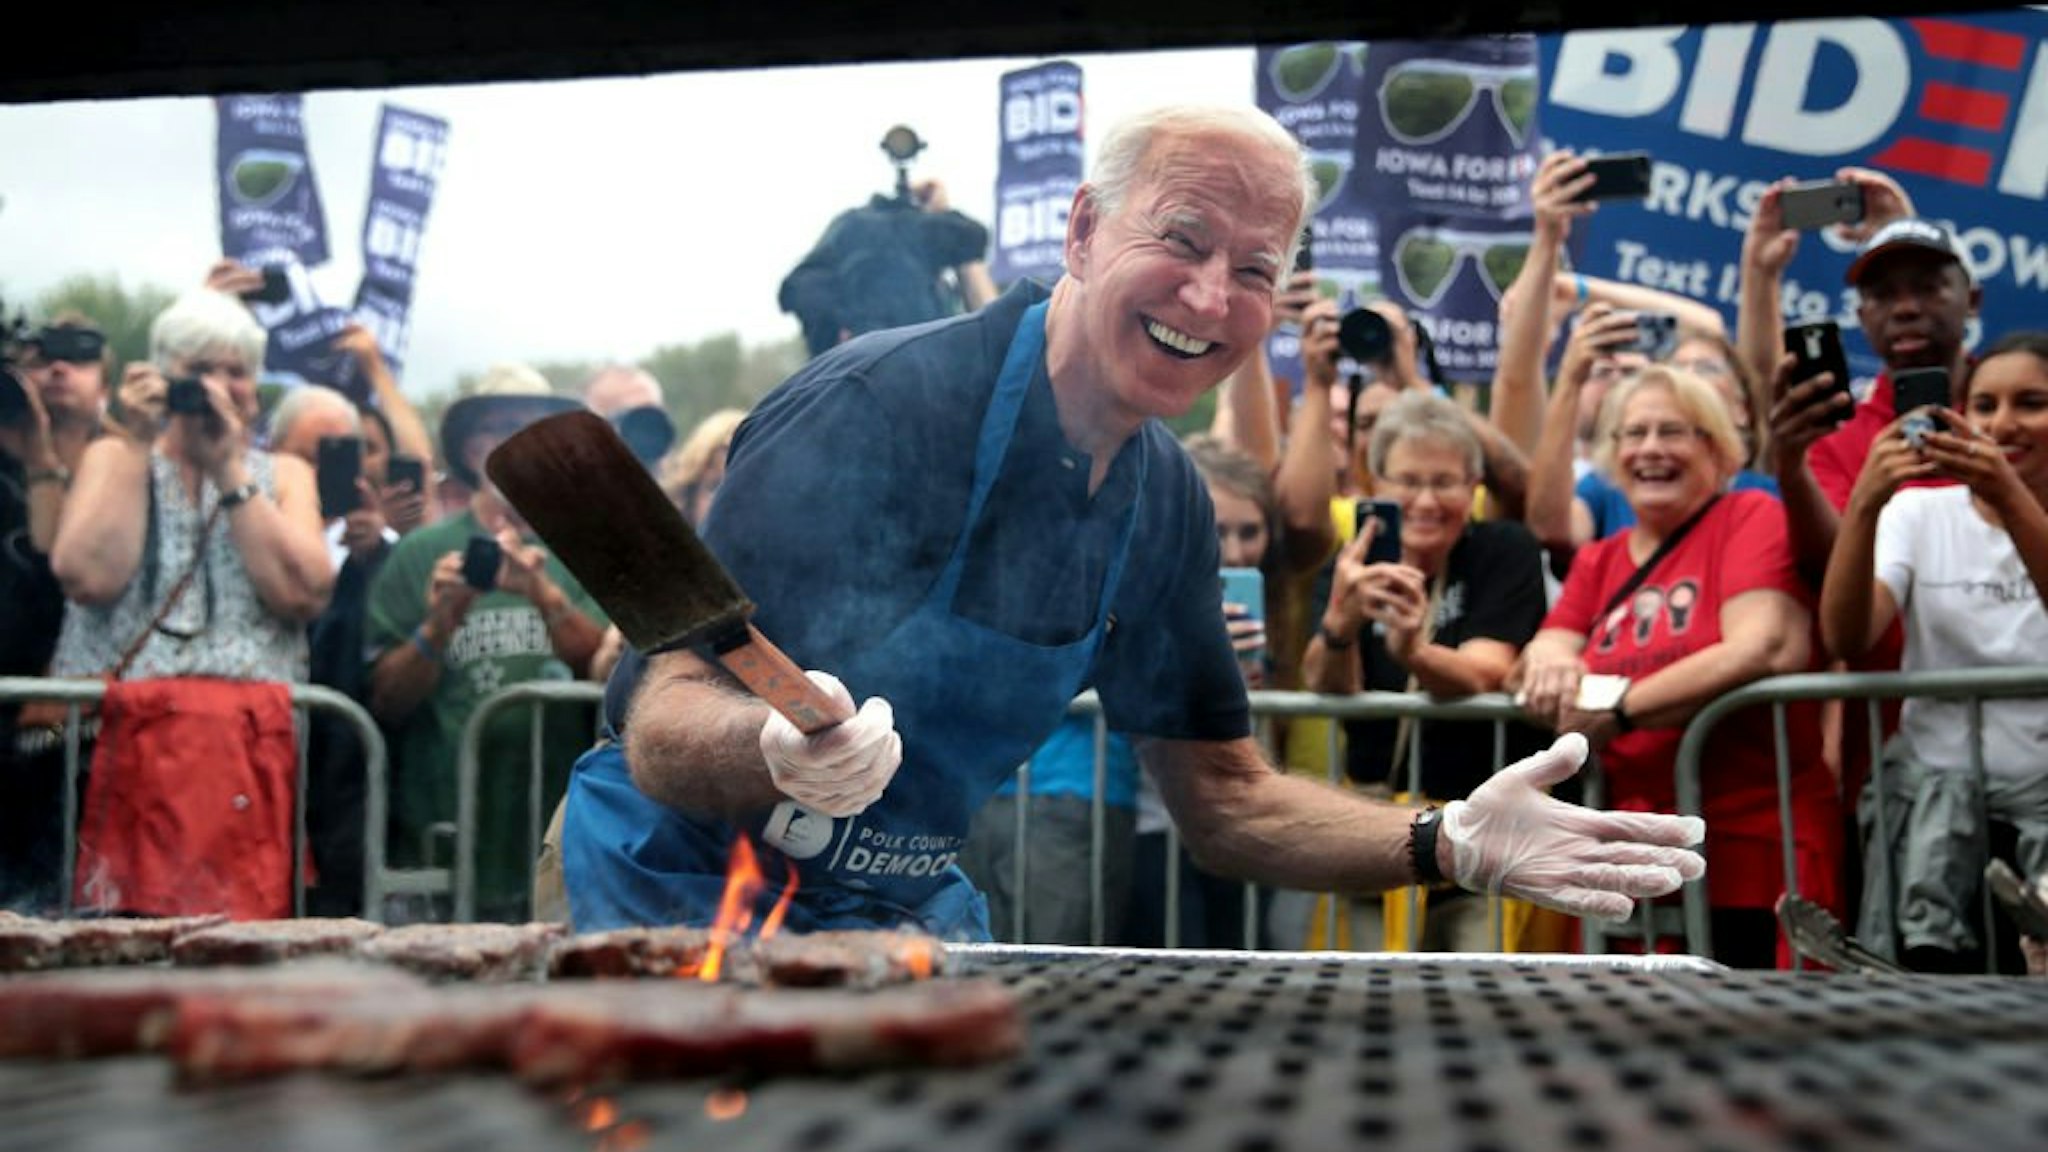 Joe Biden at the Iowa Steak Fry